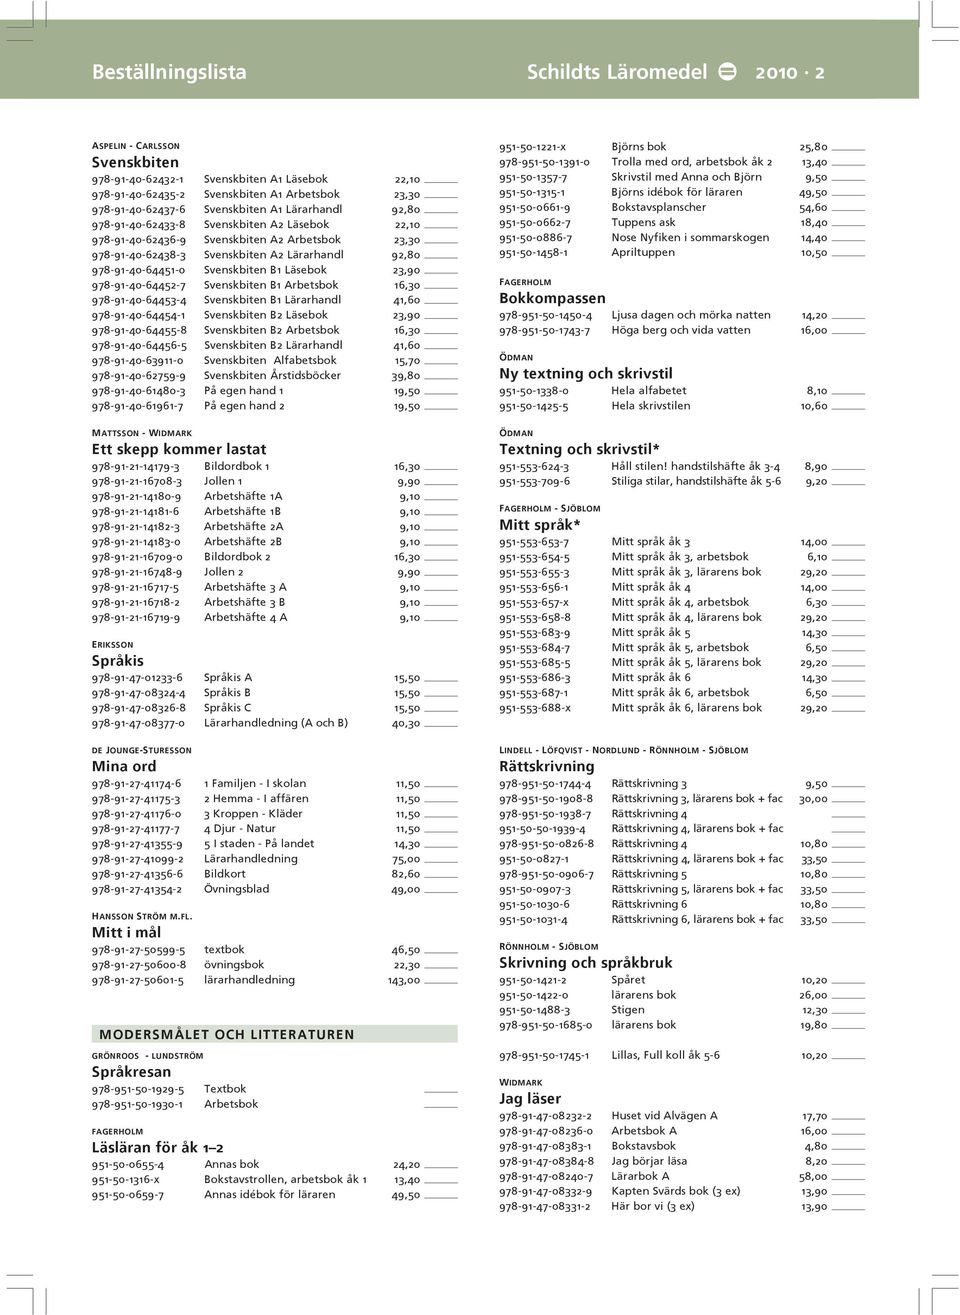 Svenskbiten B1 Läsebok 23,90 978-91-40-64452-7 Svenskbiten B1 Arbetsbok 16,30 978-91-40-64453-4 Svenskbiten B1 Lärarhandl 41,60 978-91-40-64454-1 Svenskbiten B2 Läsebok 23,90 978-91-40-64455-8